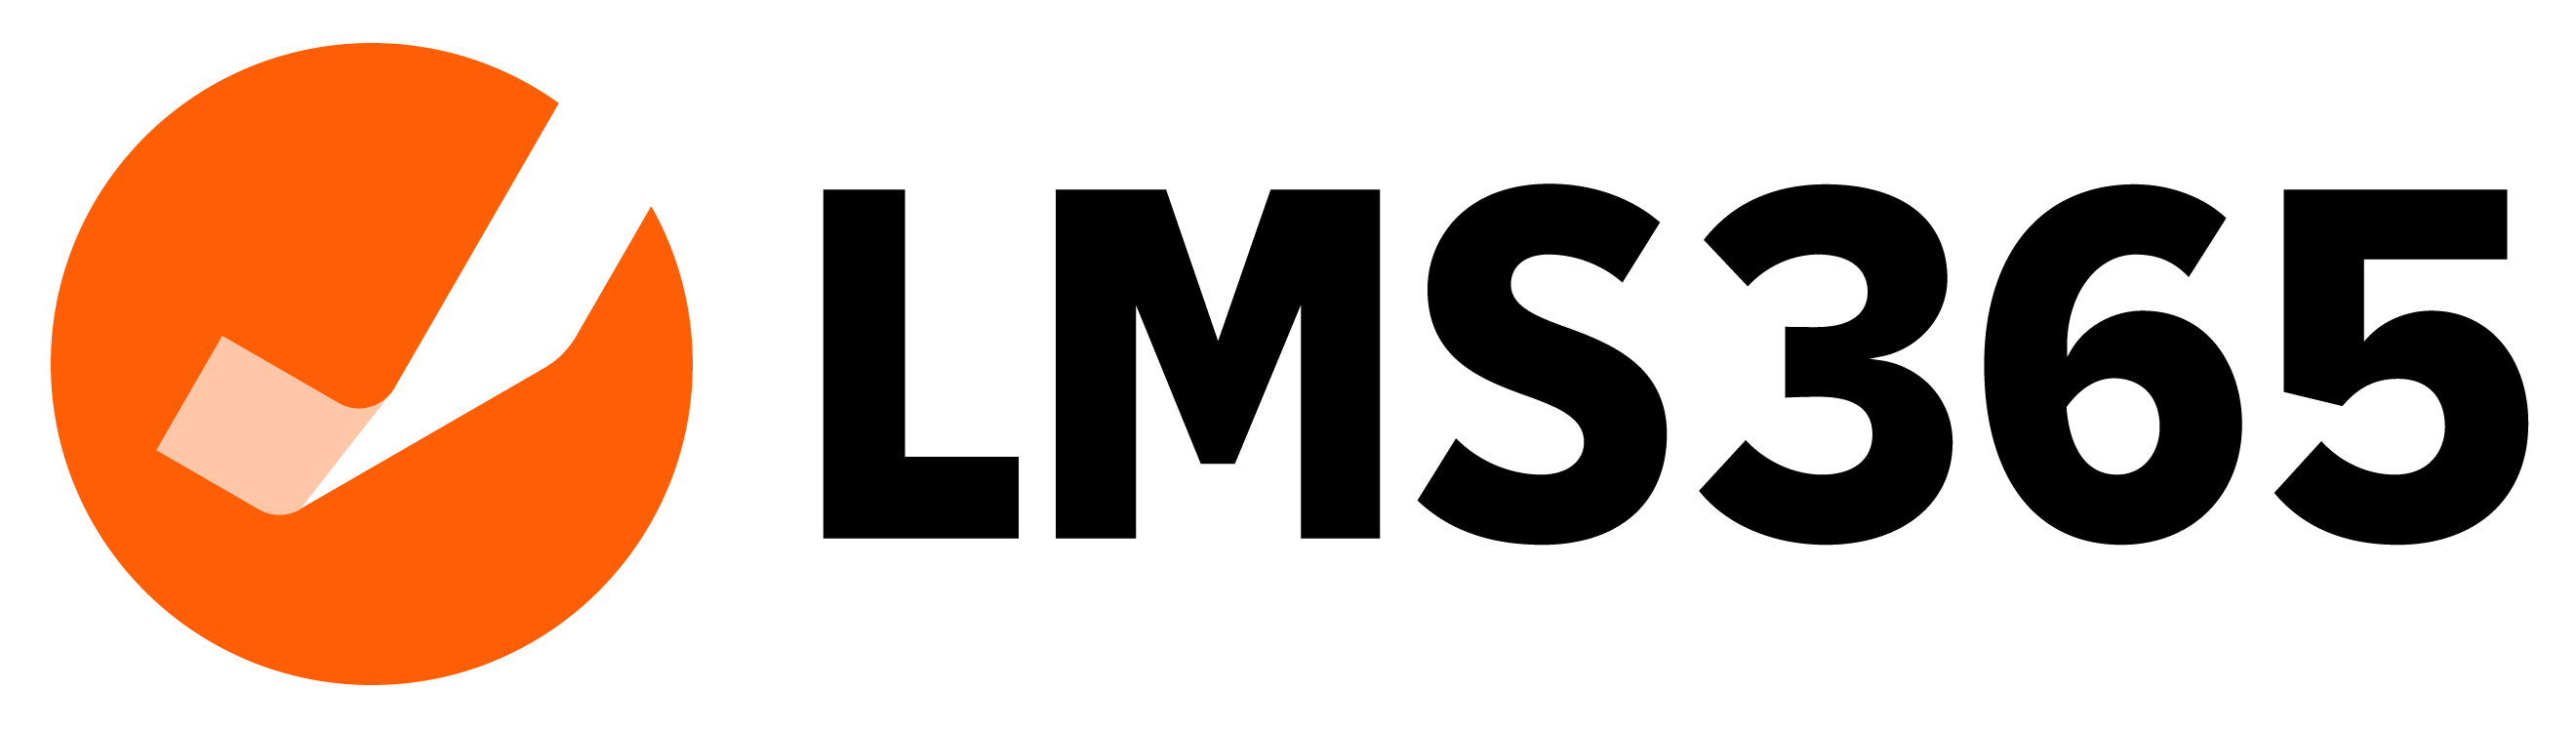 LMS365 logo - Use on White Background